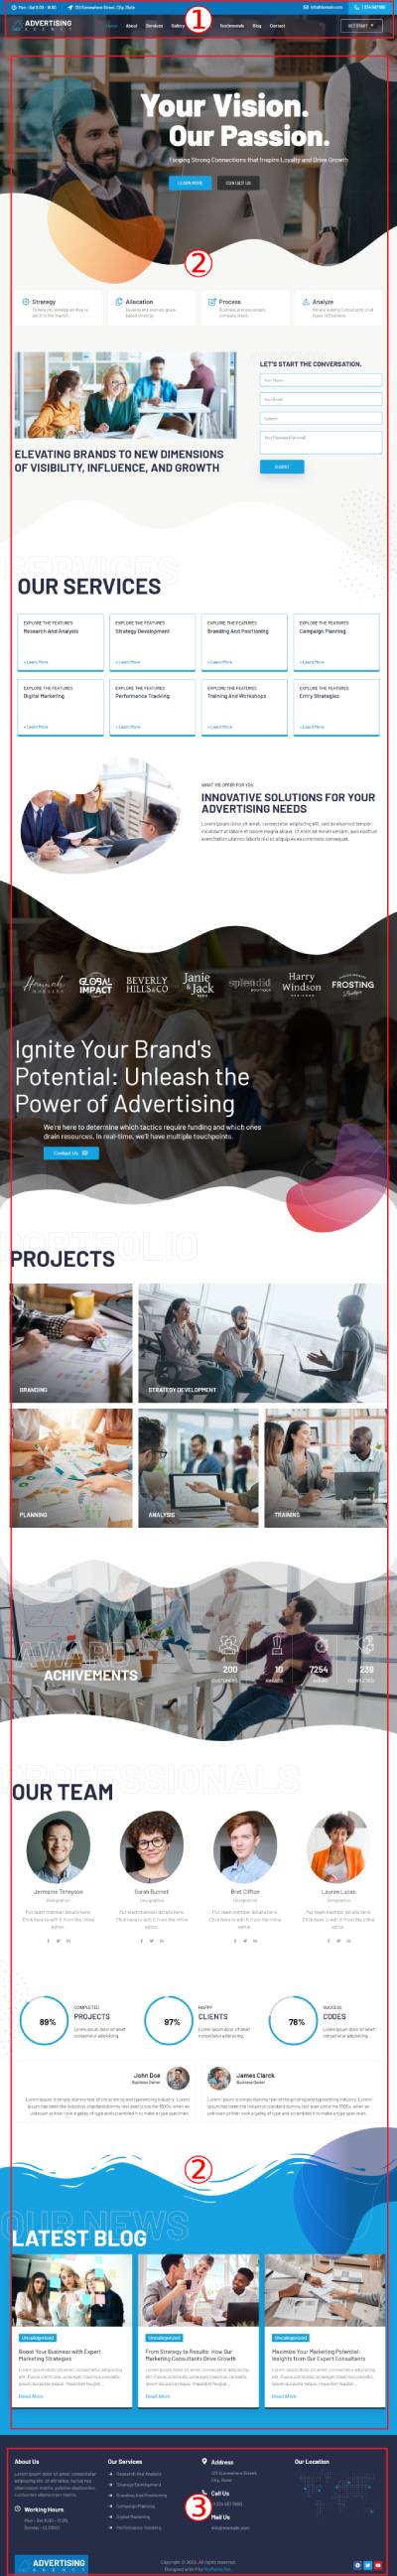 Advertising Agency Documentation  Image